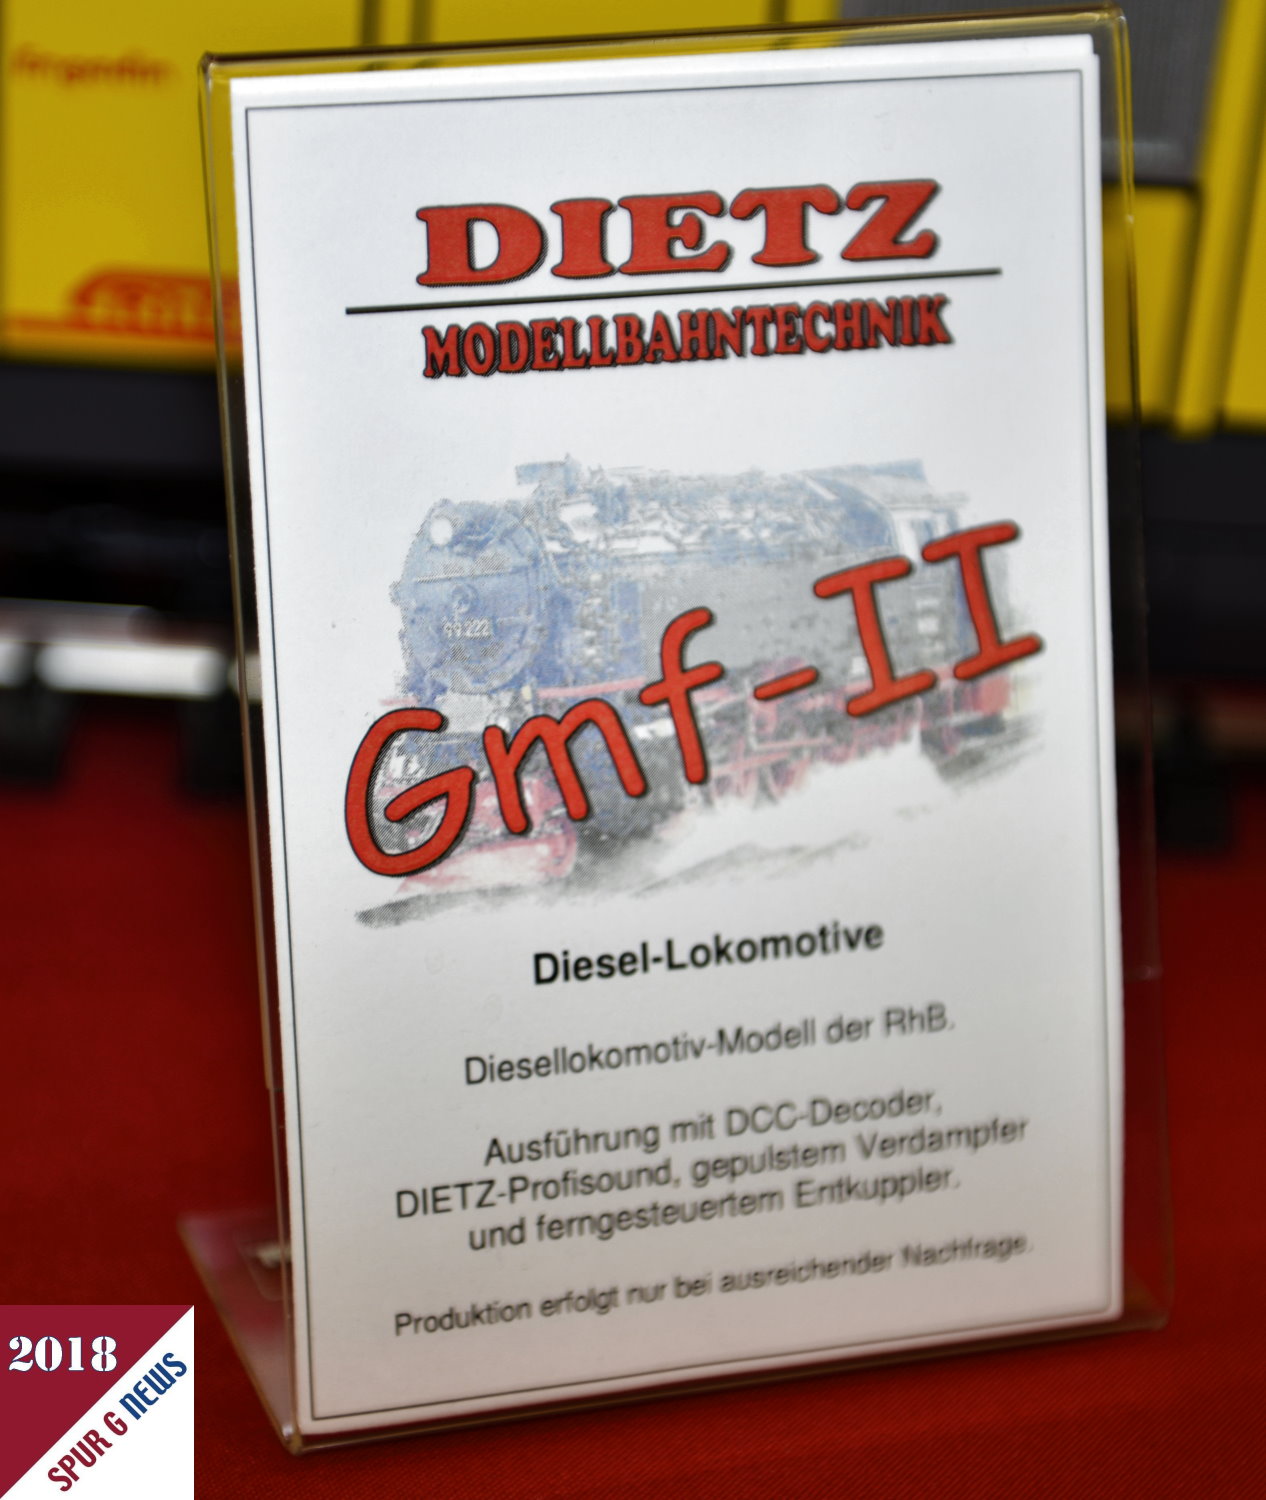 Ein Modell der RhB Lok Gmf-II - Nr. 23402 wird als Neuheit 2018 bei Dietz angeboten. Die Diesellokomotive wird mit DCC-Decoder, DIETZ-Profisound, gepulstem Verdampfer und ferngesteuertem Entkuppler gefertigt. Produktion erfolgt nur ein ausreichender Nachfrage. 